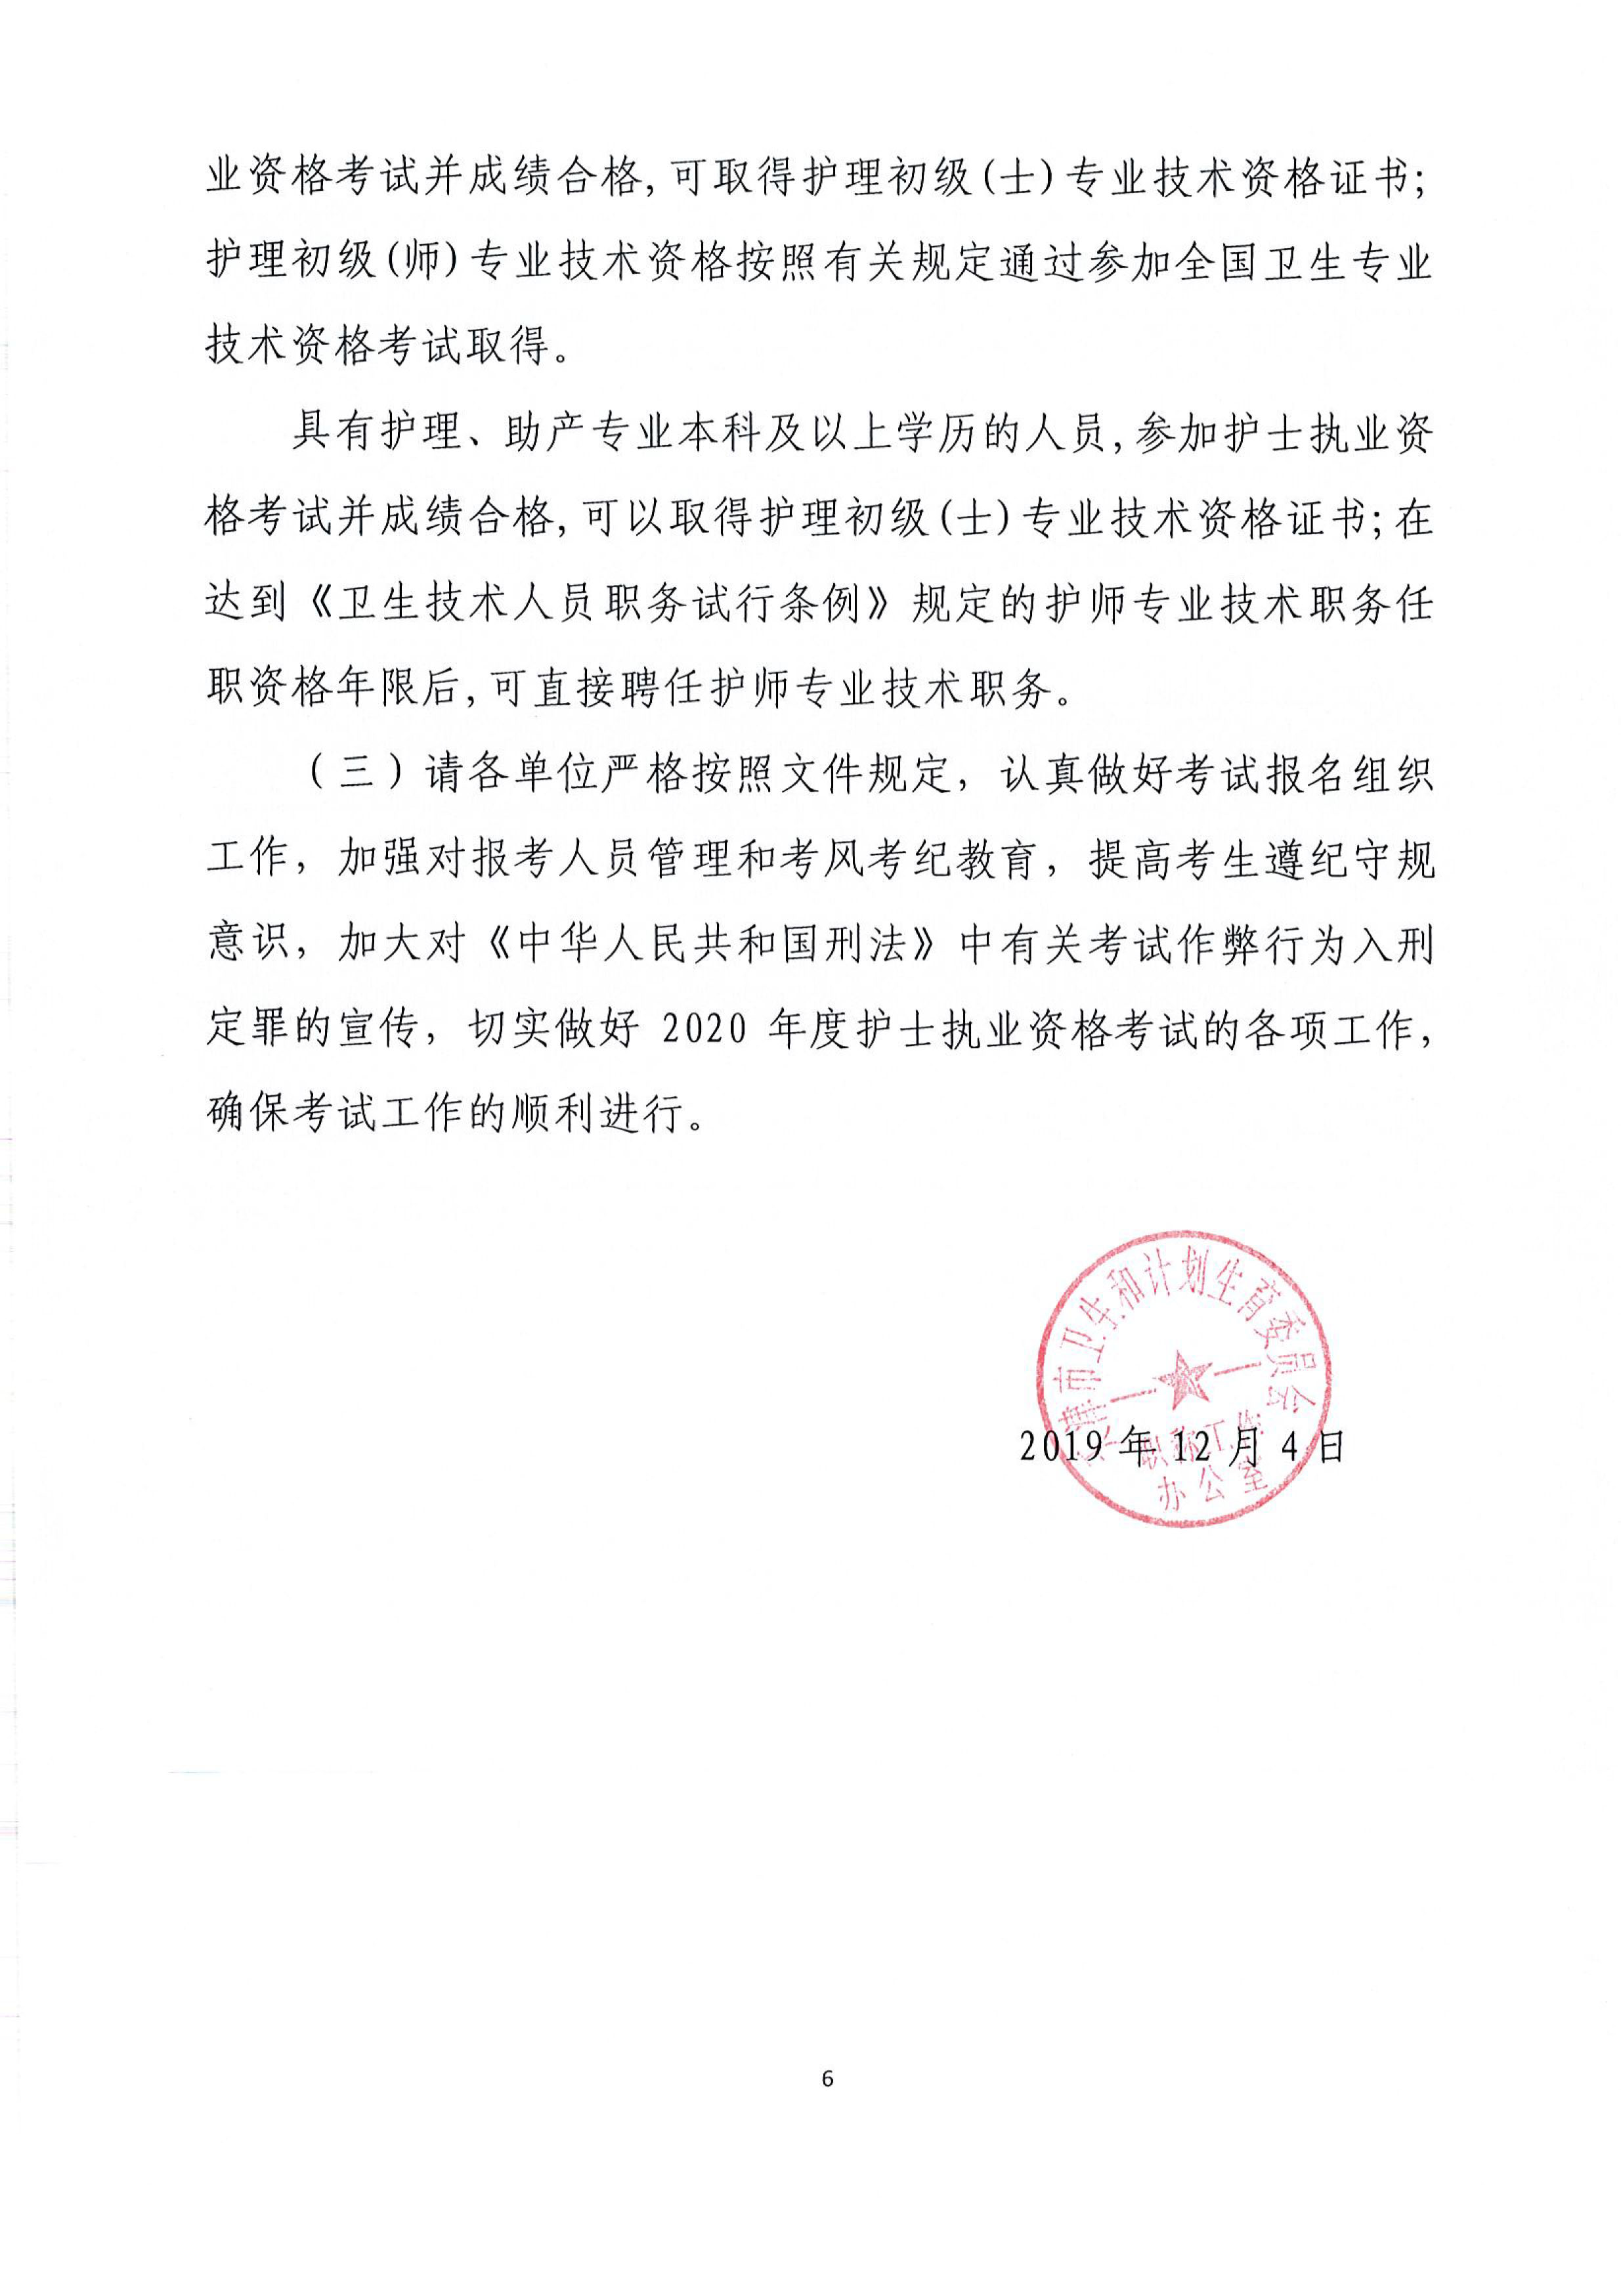 天津2020年护士执业资格考试报名通知